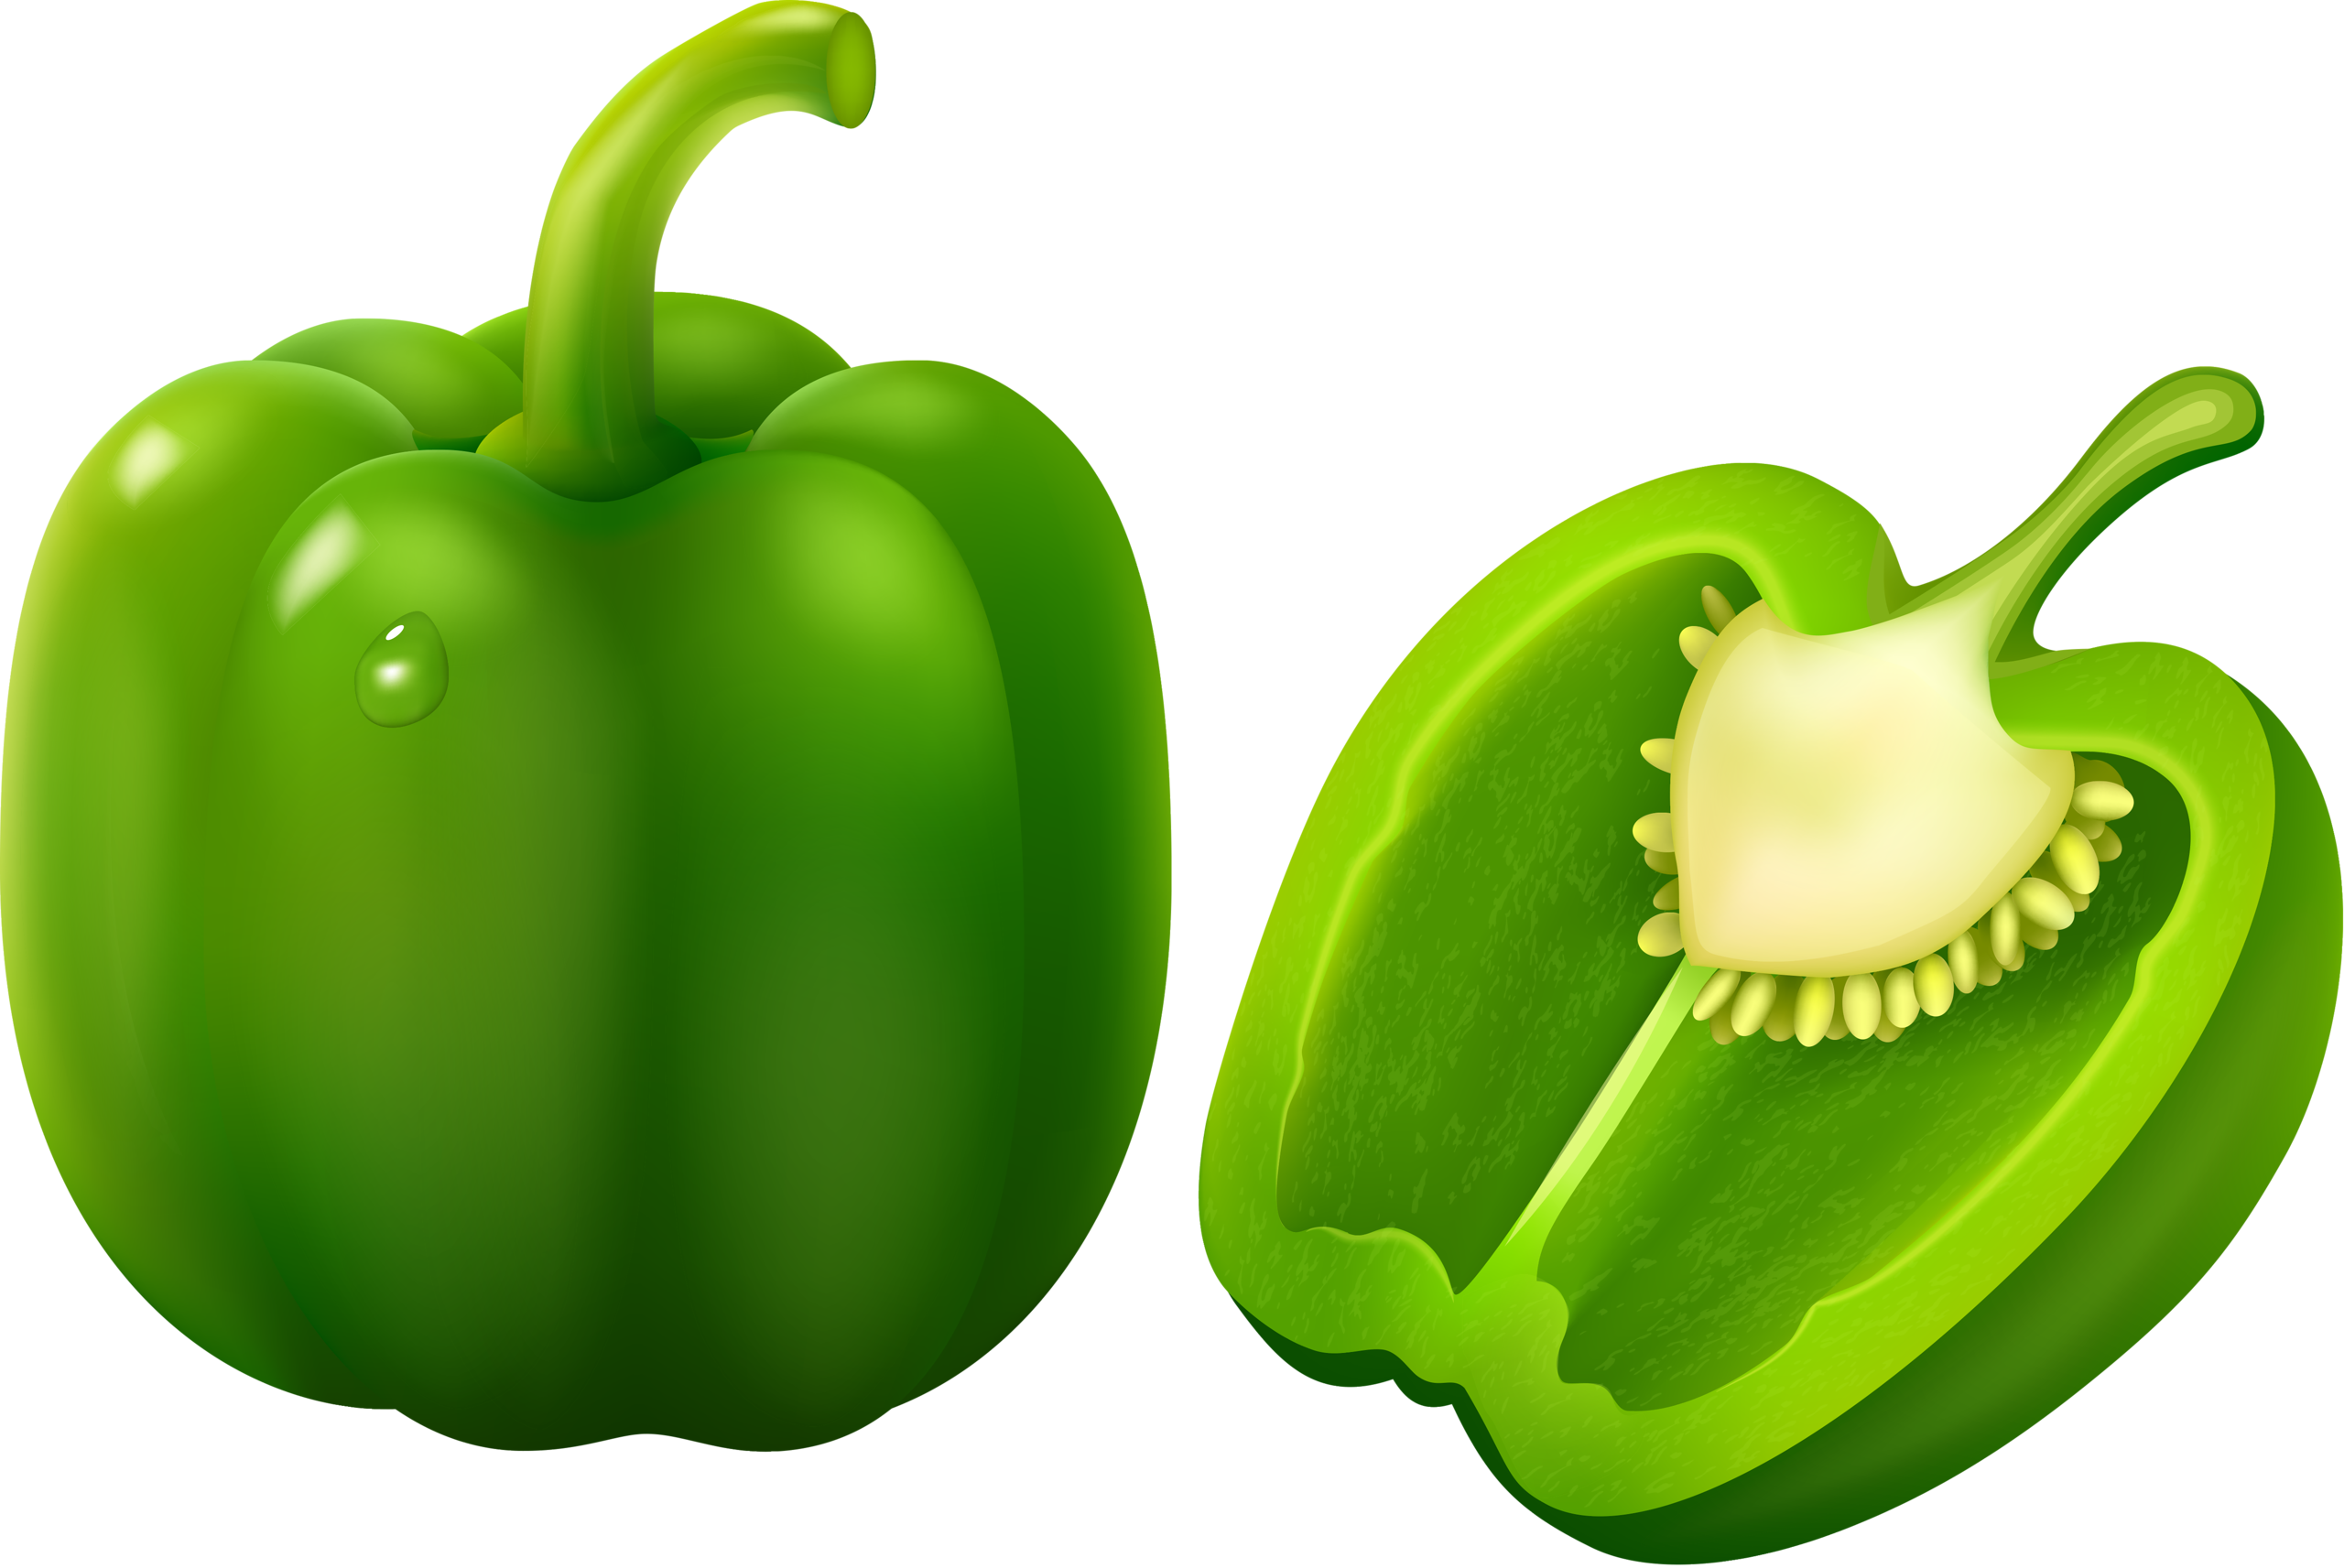 A Green Bell Pepper Cut In Half